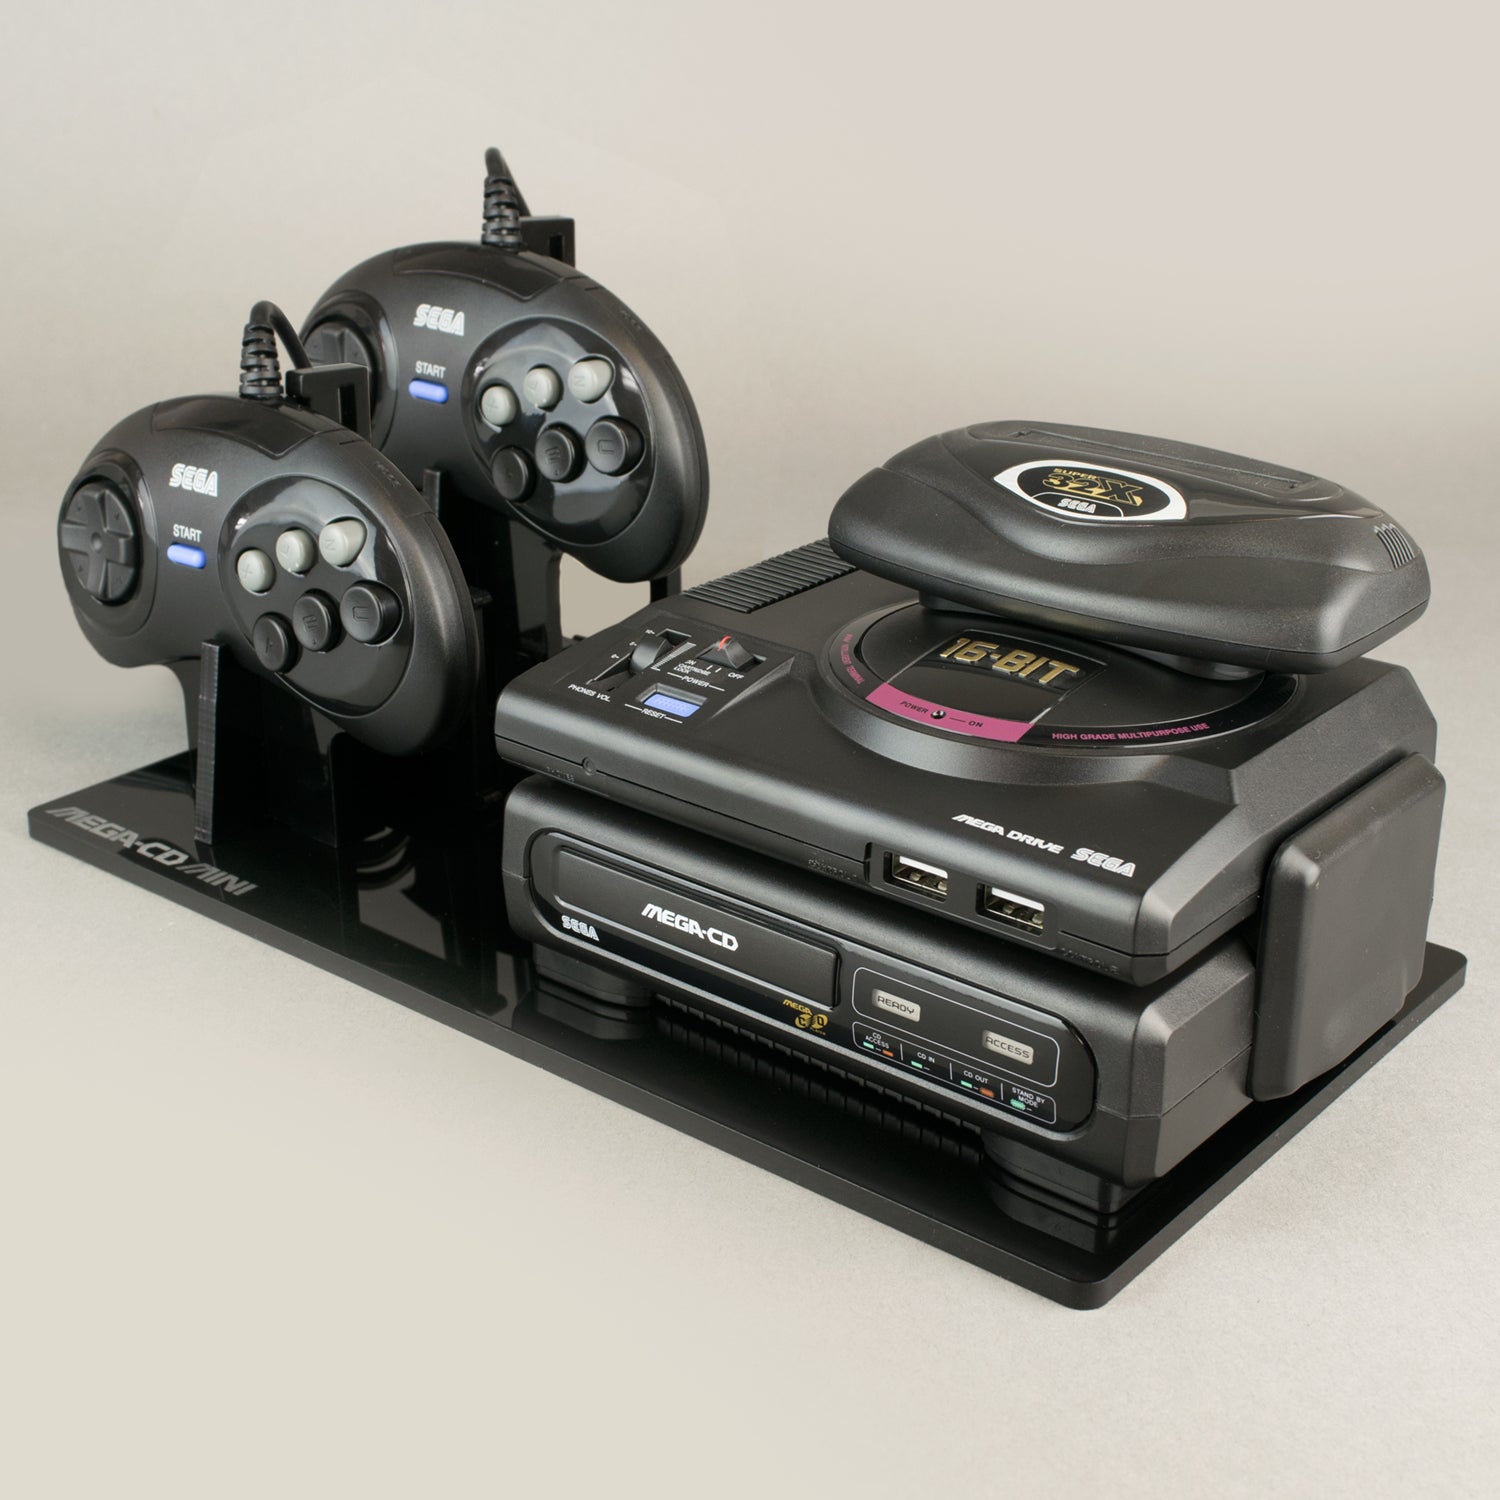 Displai Pro: Sega Mega Drive Mini Display